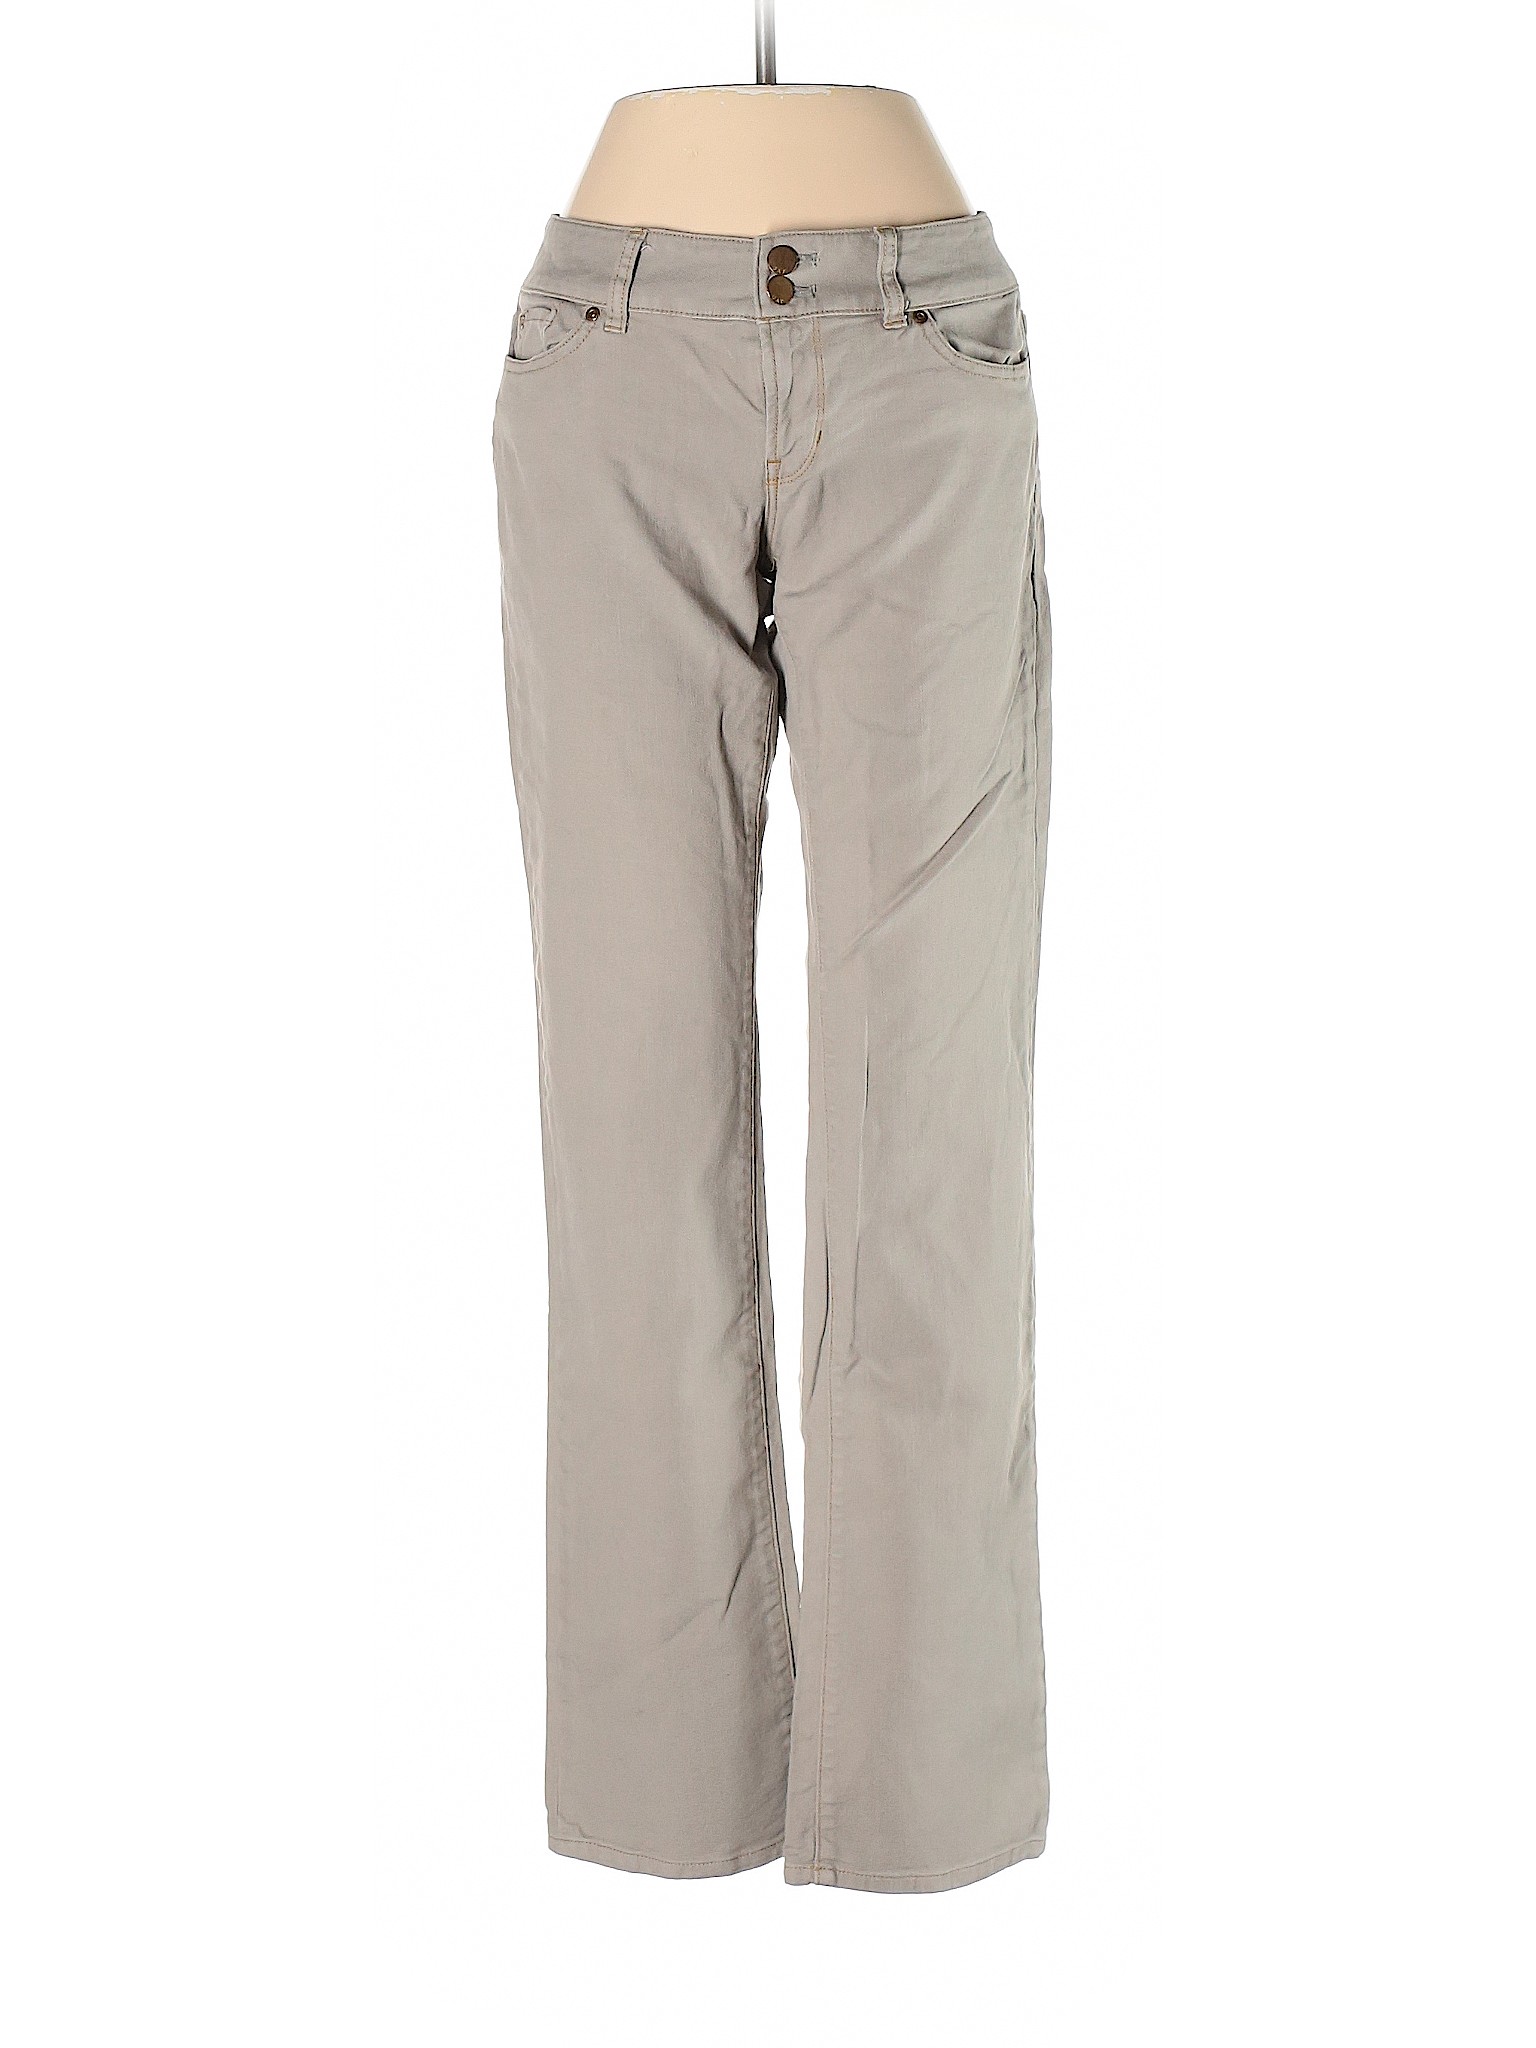 Gap Women Brown Jeans 4 | eBay